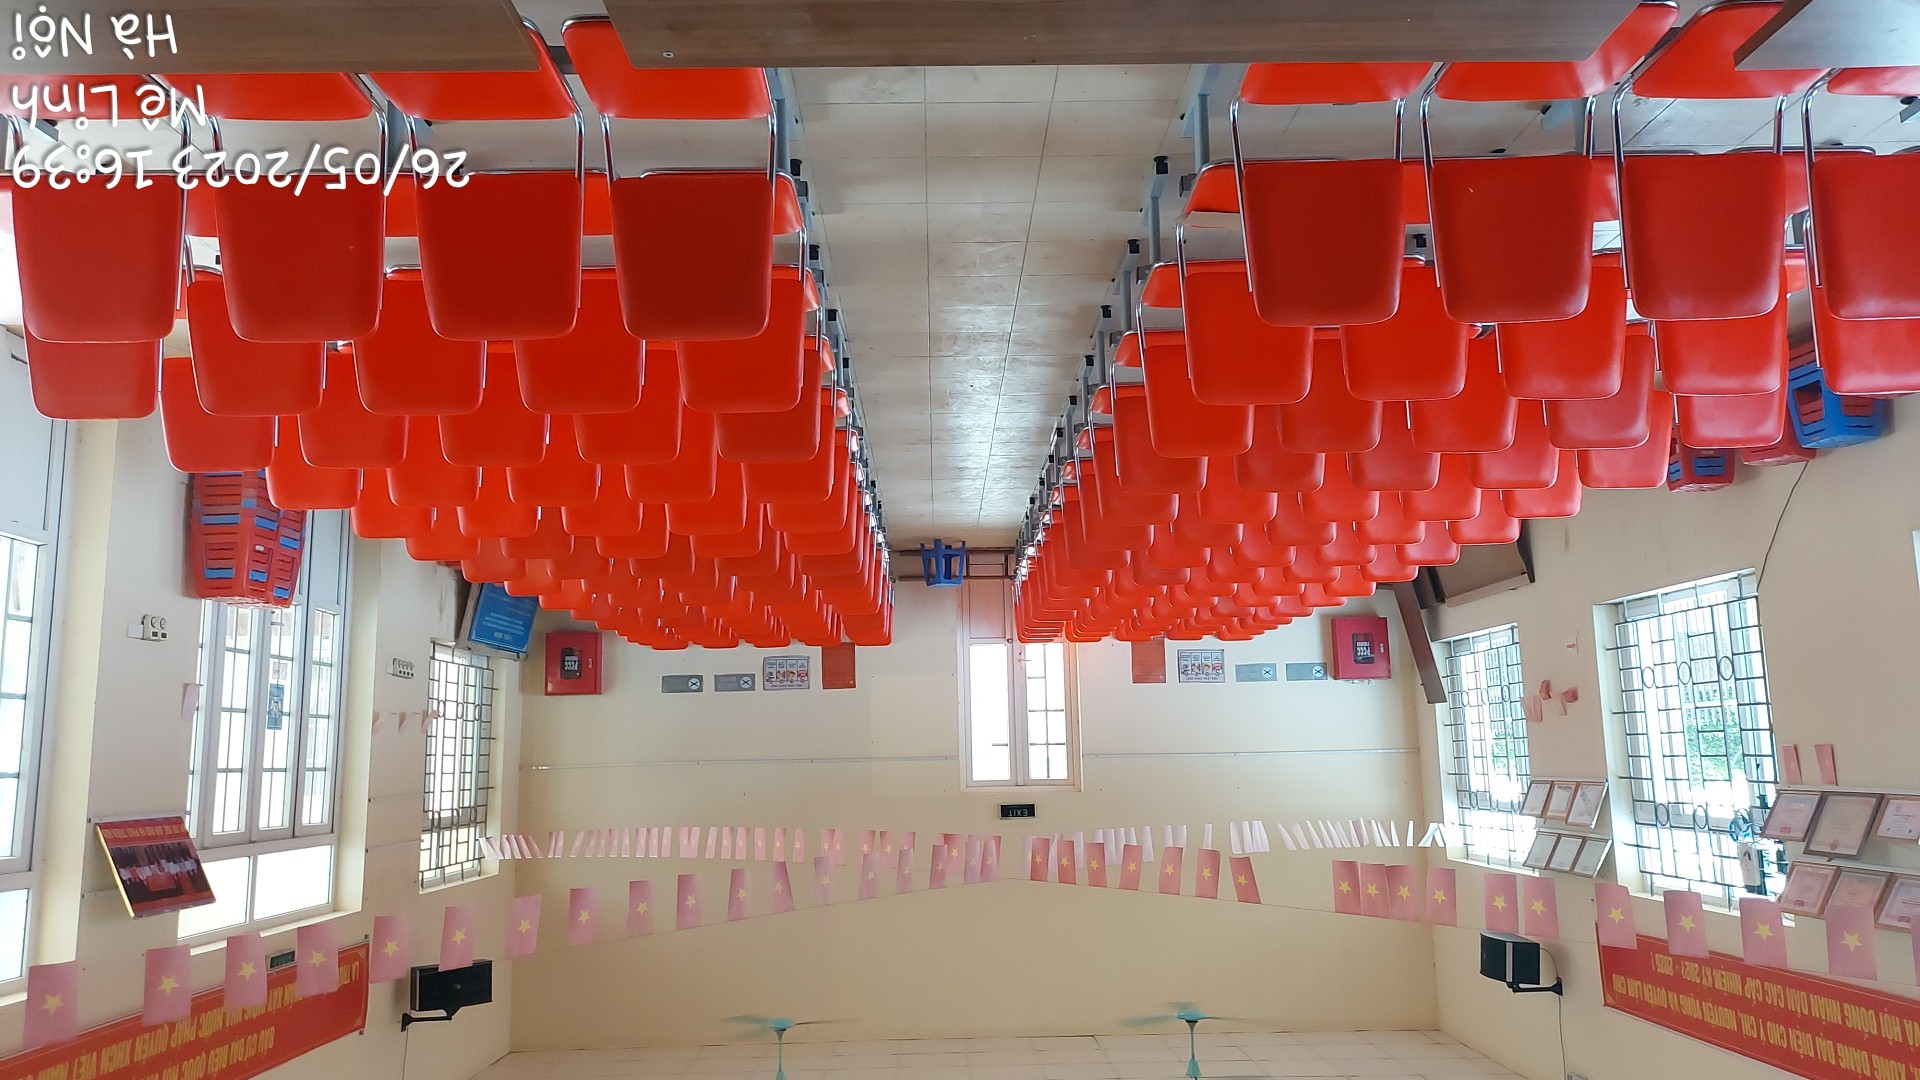 Dự án cung cấp ghế phòng chờ tại nhà văn hòa thôn Hoàng Kim, Hoàng Kim, Mê Linh